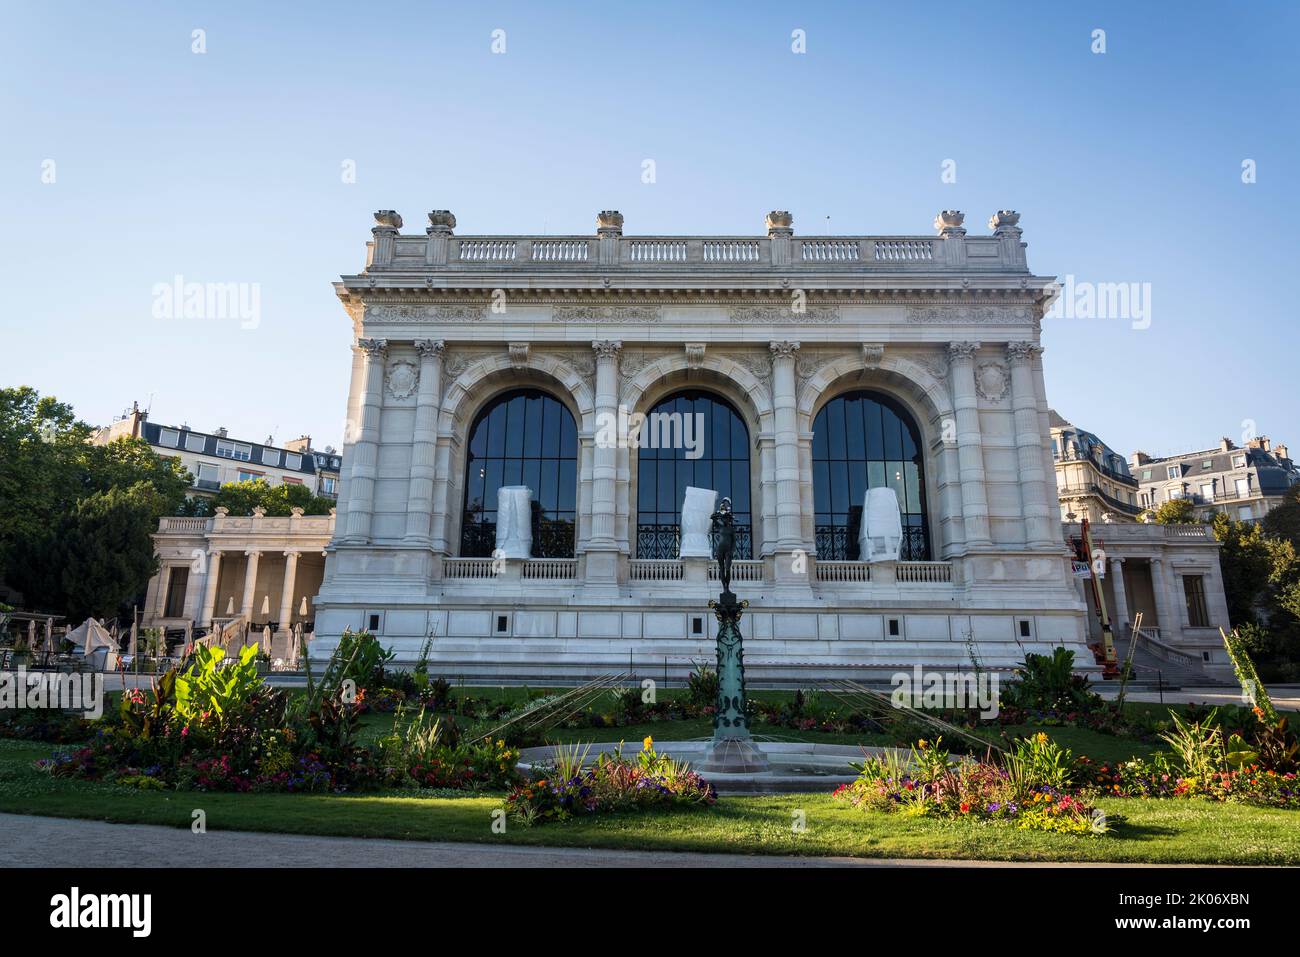 Palais Galliera, bellissimo giardino del museo della moda Chic Beaux-Arts che espone 3 secoli di abbigliamento, accessori e fotografia, Parigi, Francia Foto Stock